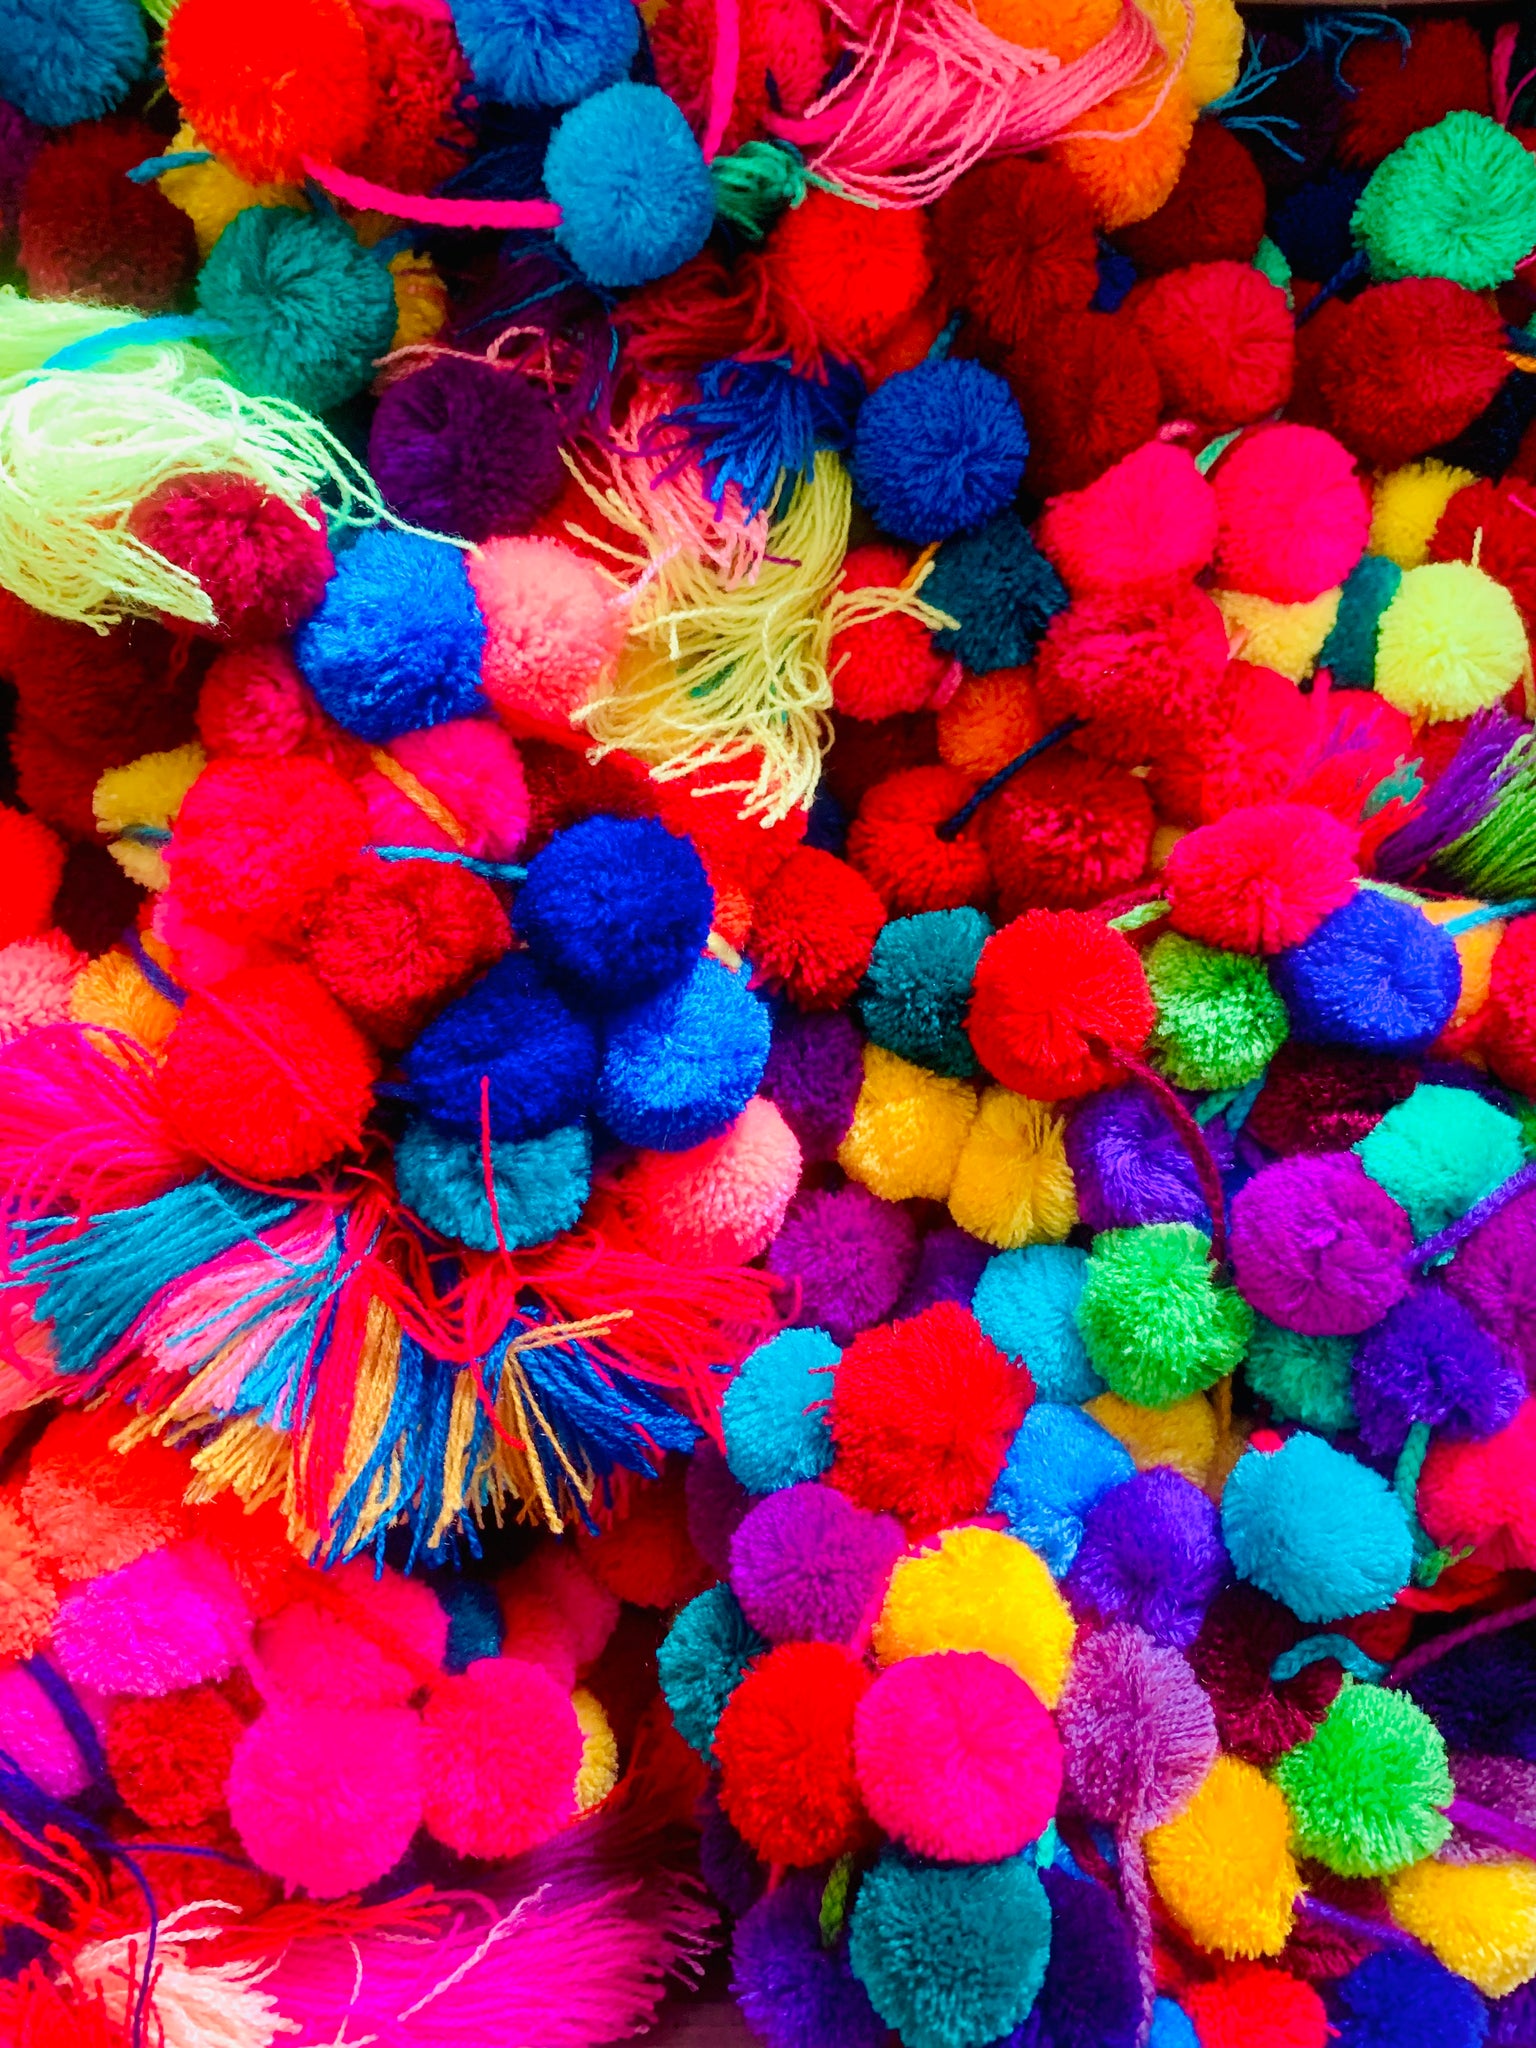 Stringhe multicolore per pom pom TORNATE DISPONIBILI 😁😁😁